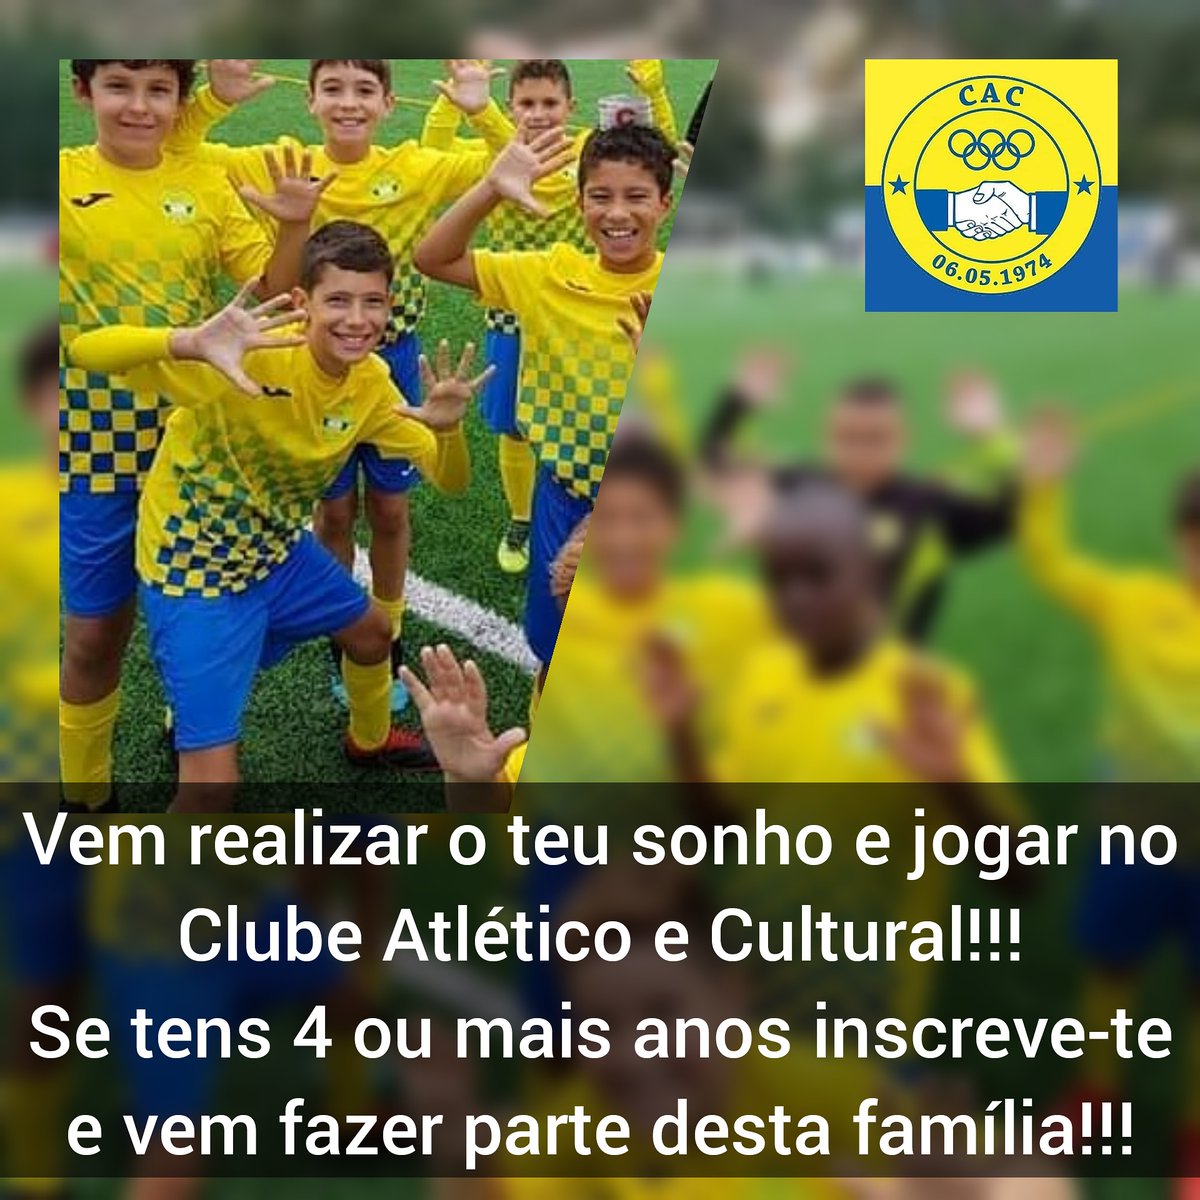 Clube Atlético e Cultural